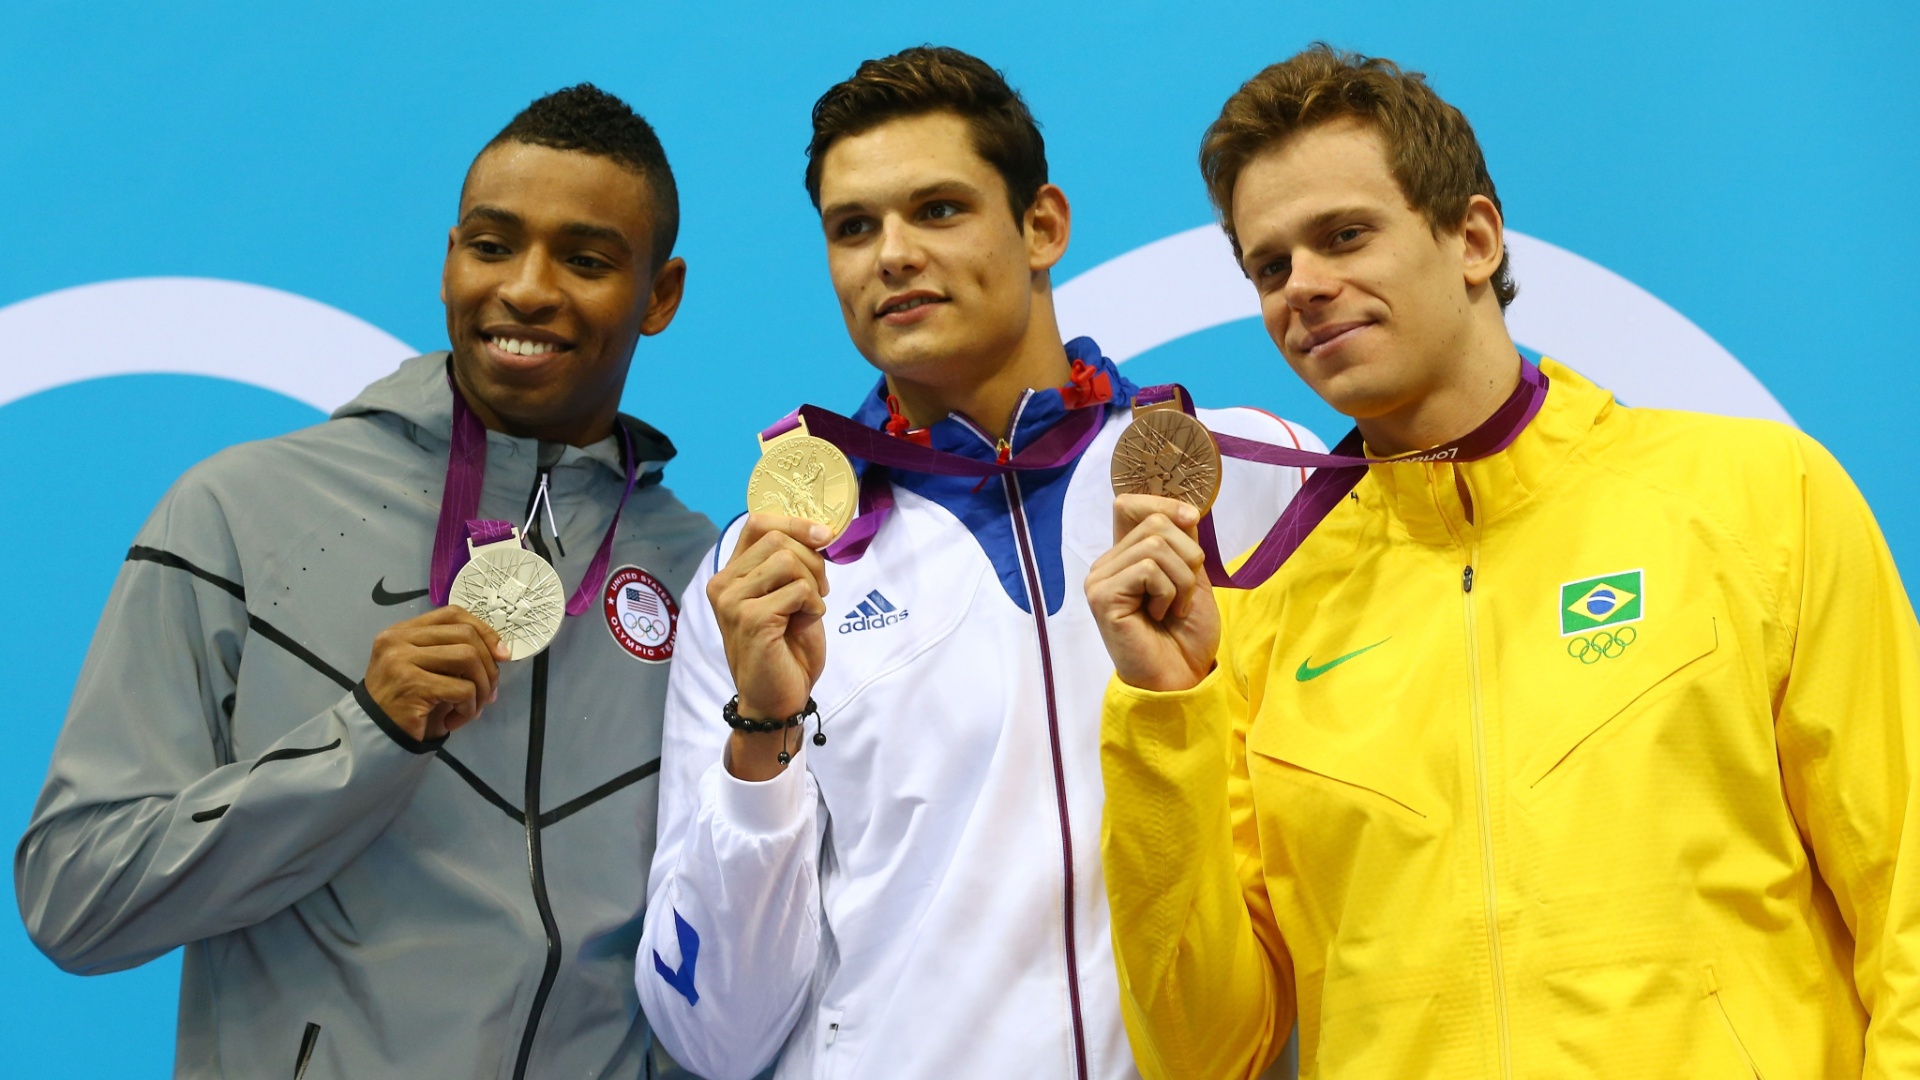 Cesar Cielo exibe a medalha de bronze ao lado de Florent Manaudou (ouro) e Cullen Jones (prata)